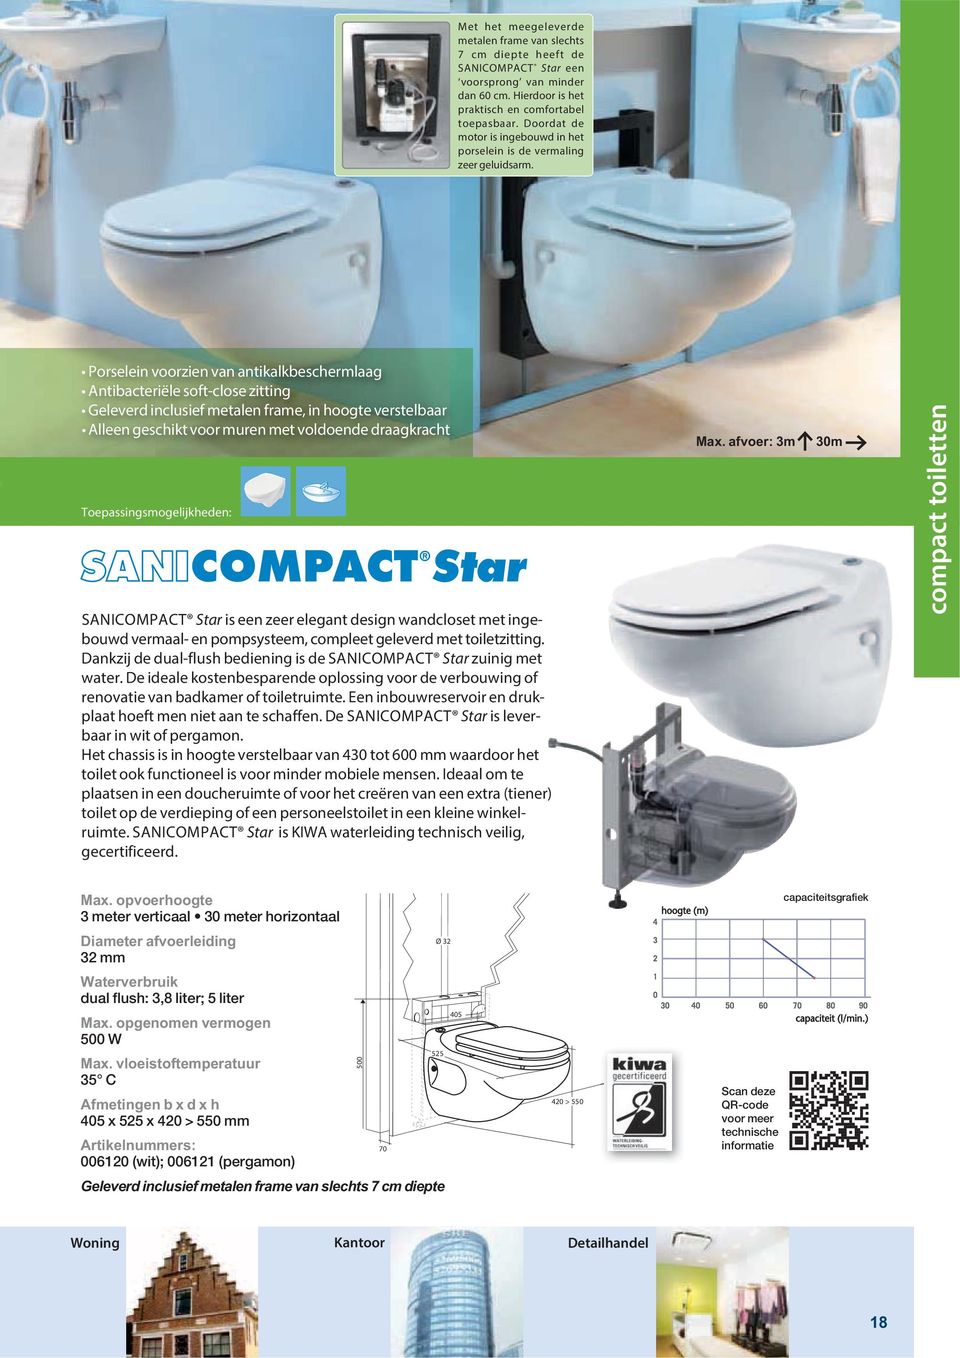 COMPACT Star SANICOMPACT Star is een zeer elegant design wandcloset met ingebouwd vermaal- en pompsysteem, compleet geleverd met toiletzitting.